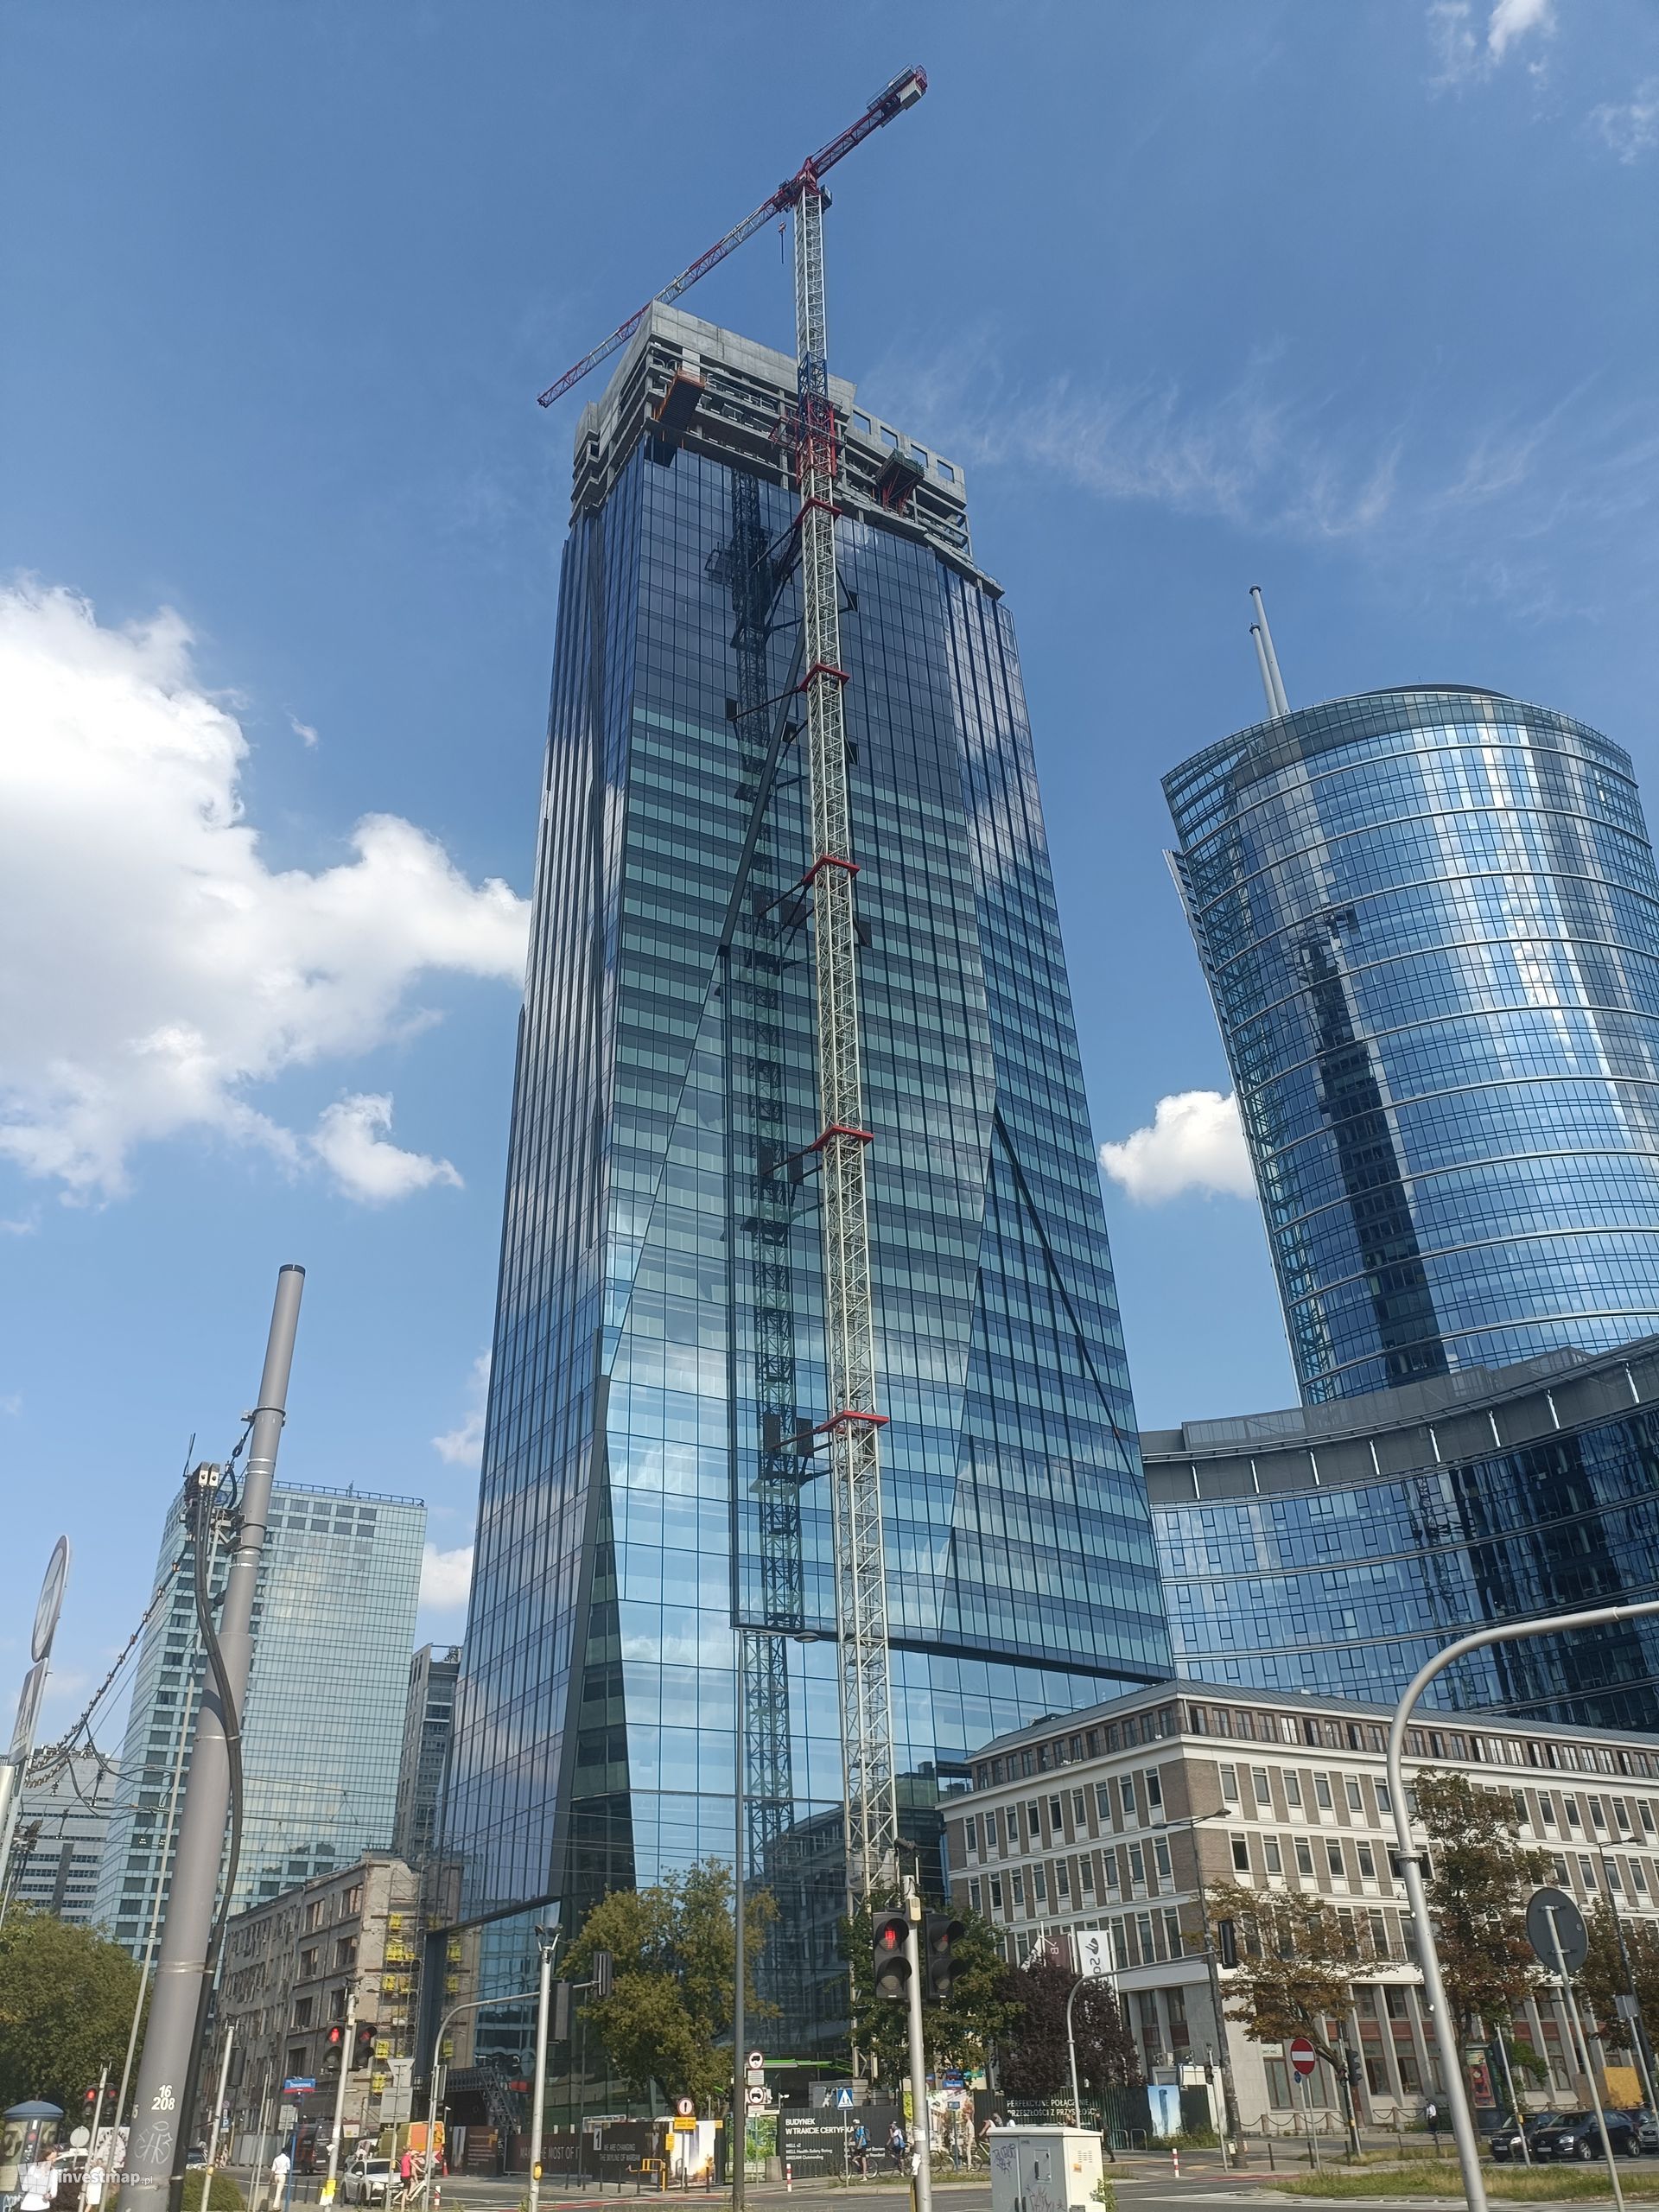 W centrum Warszawy Ghelamco buduje 174-metrowy wieżowiec The Bridge 